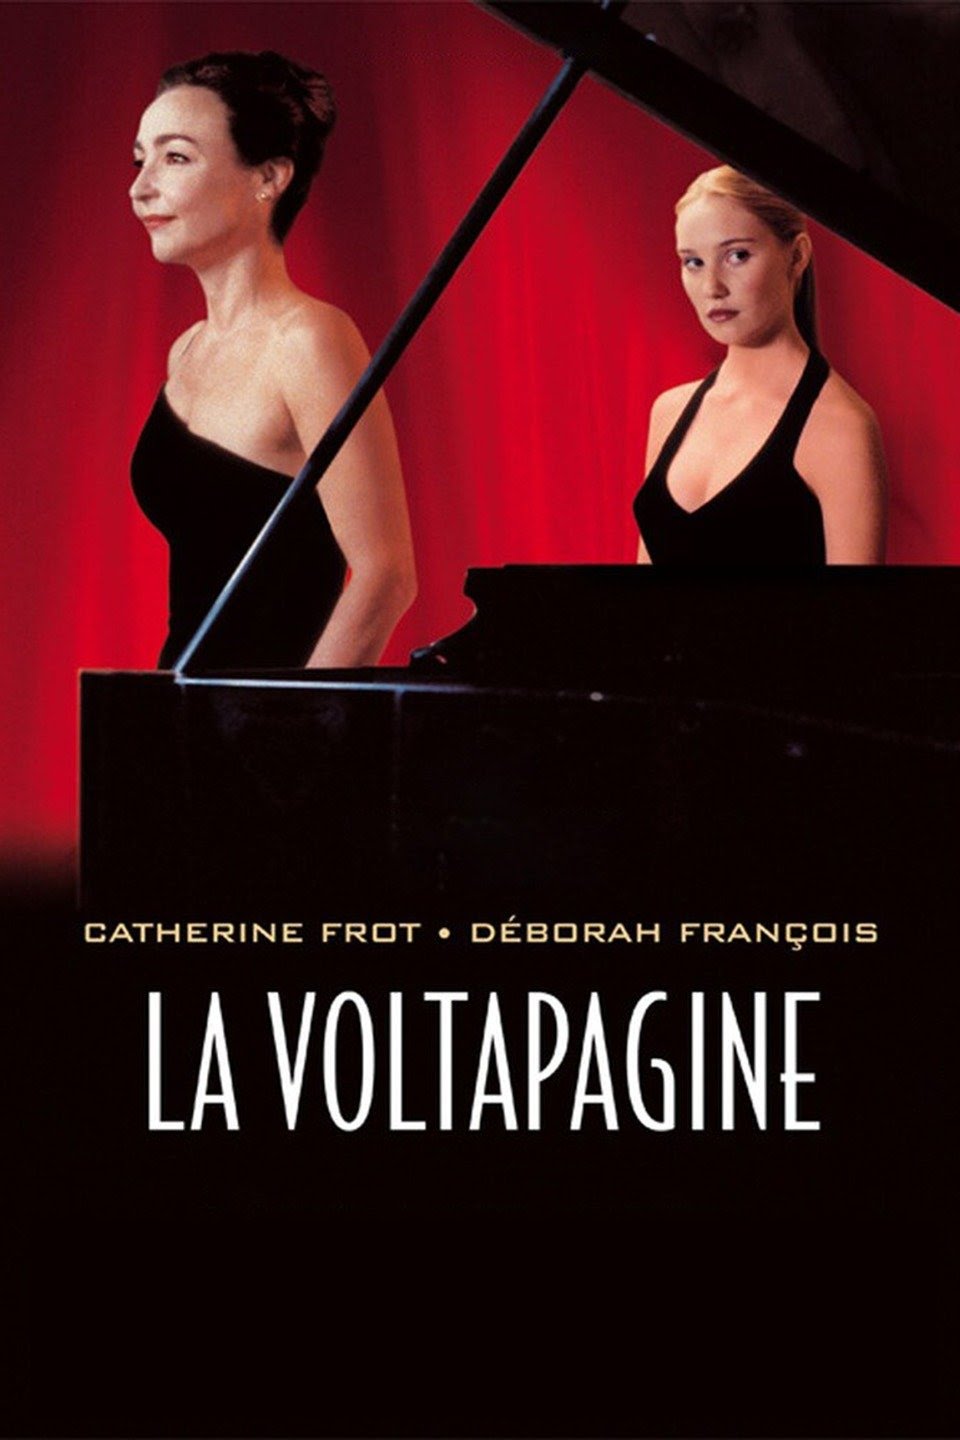 La voltapagine (2006)